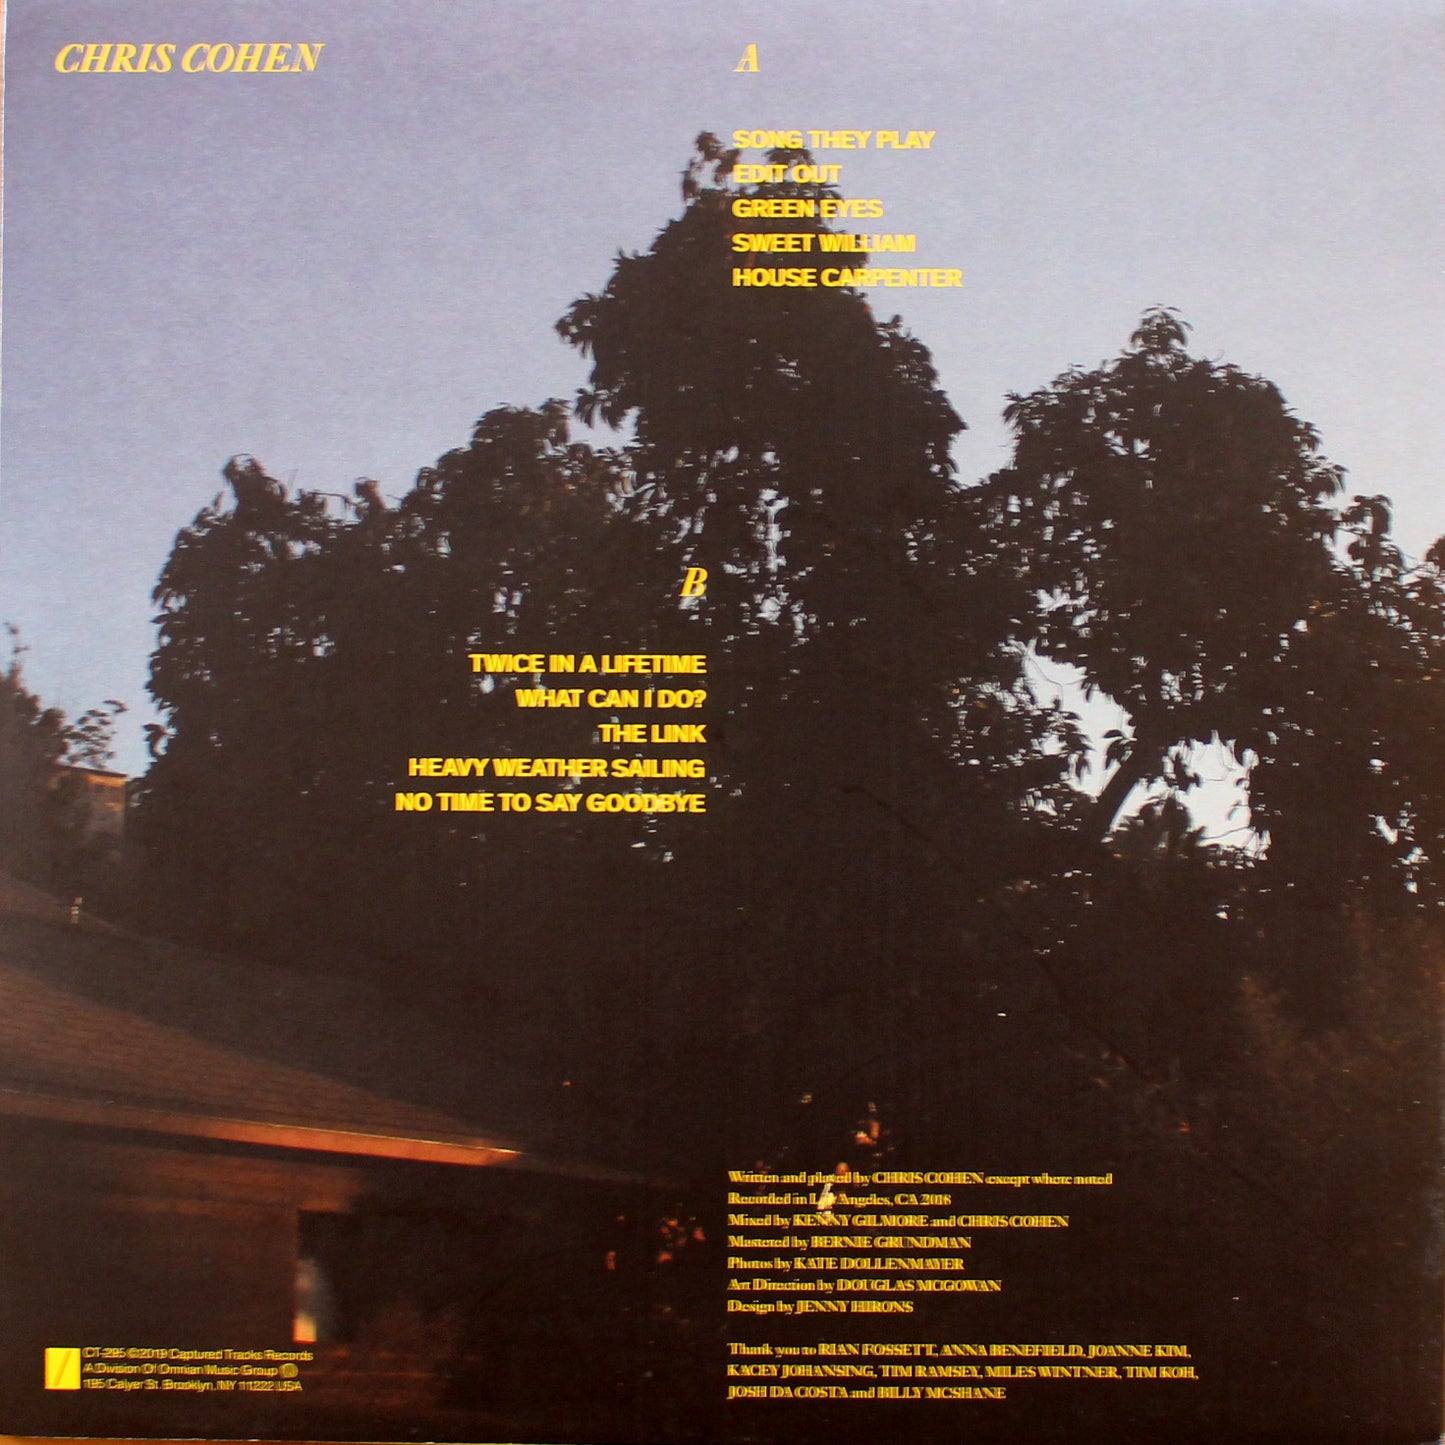 Chris Cohen - Chris Cohen